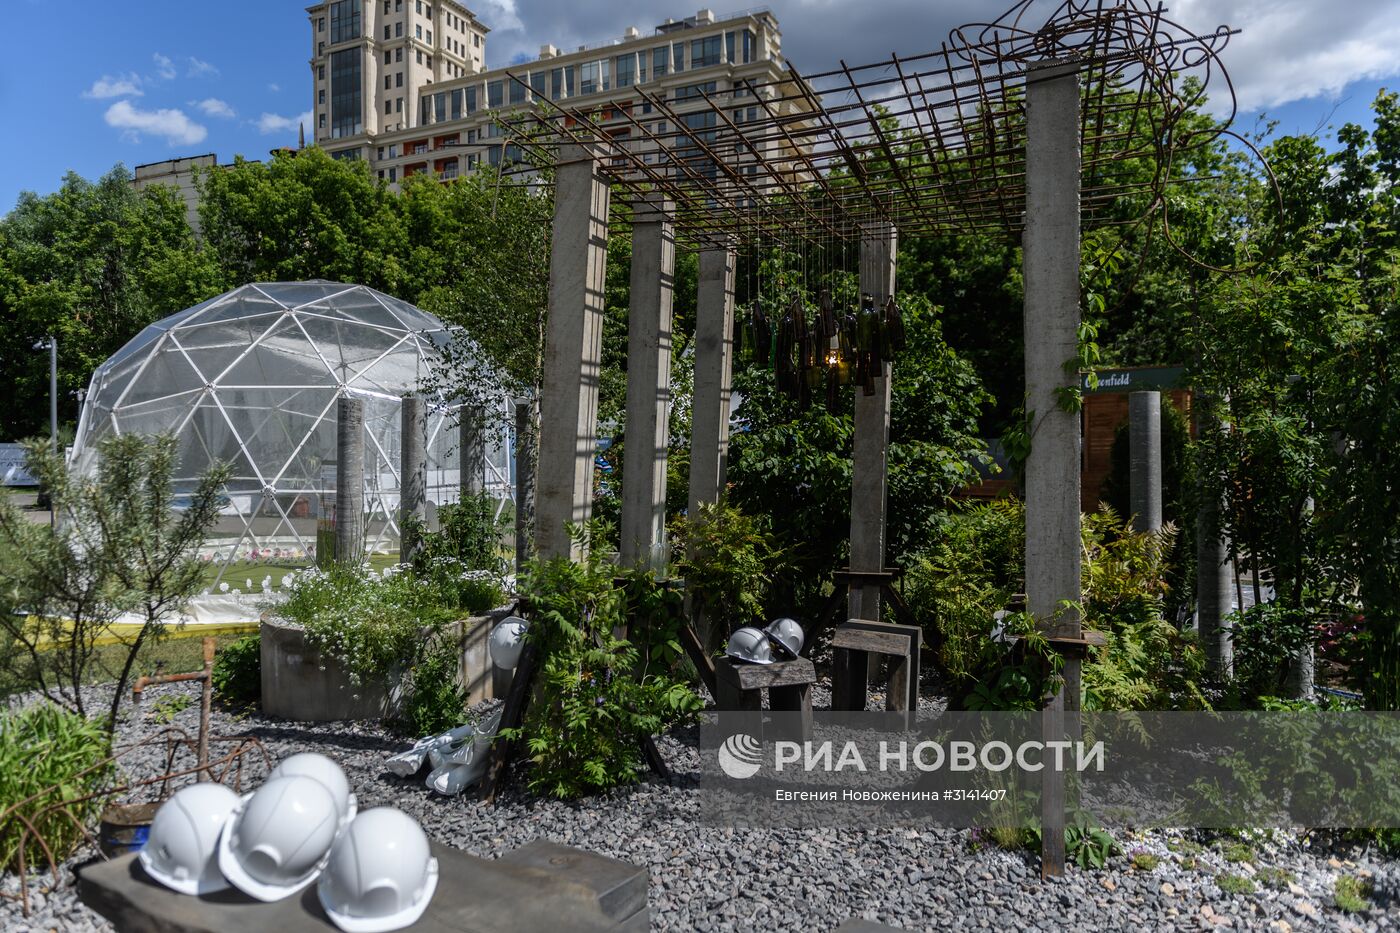 VI Московский Международный фестиваль садов и цветов Moscow Flower Show в парке искусств Музеон